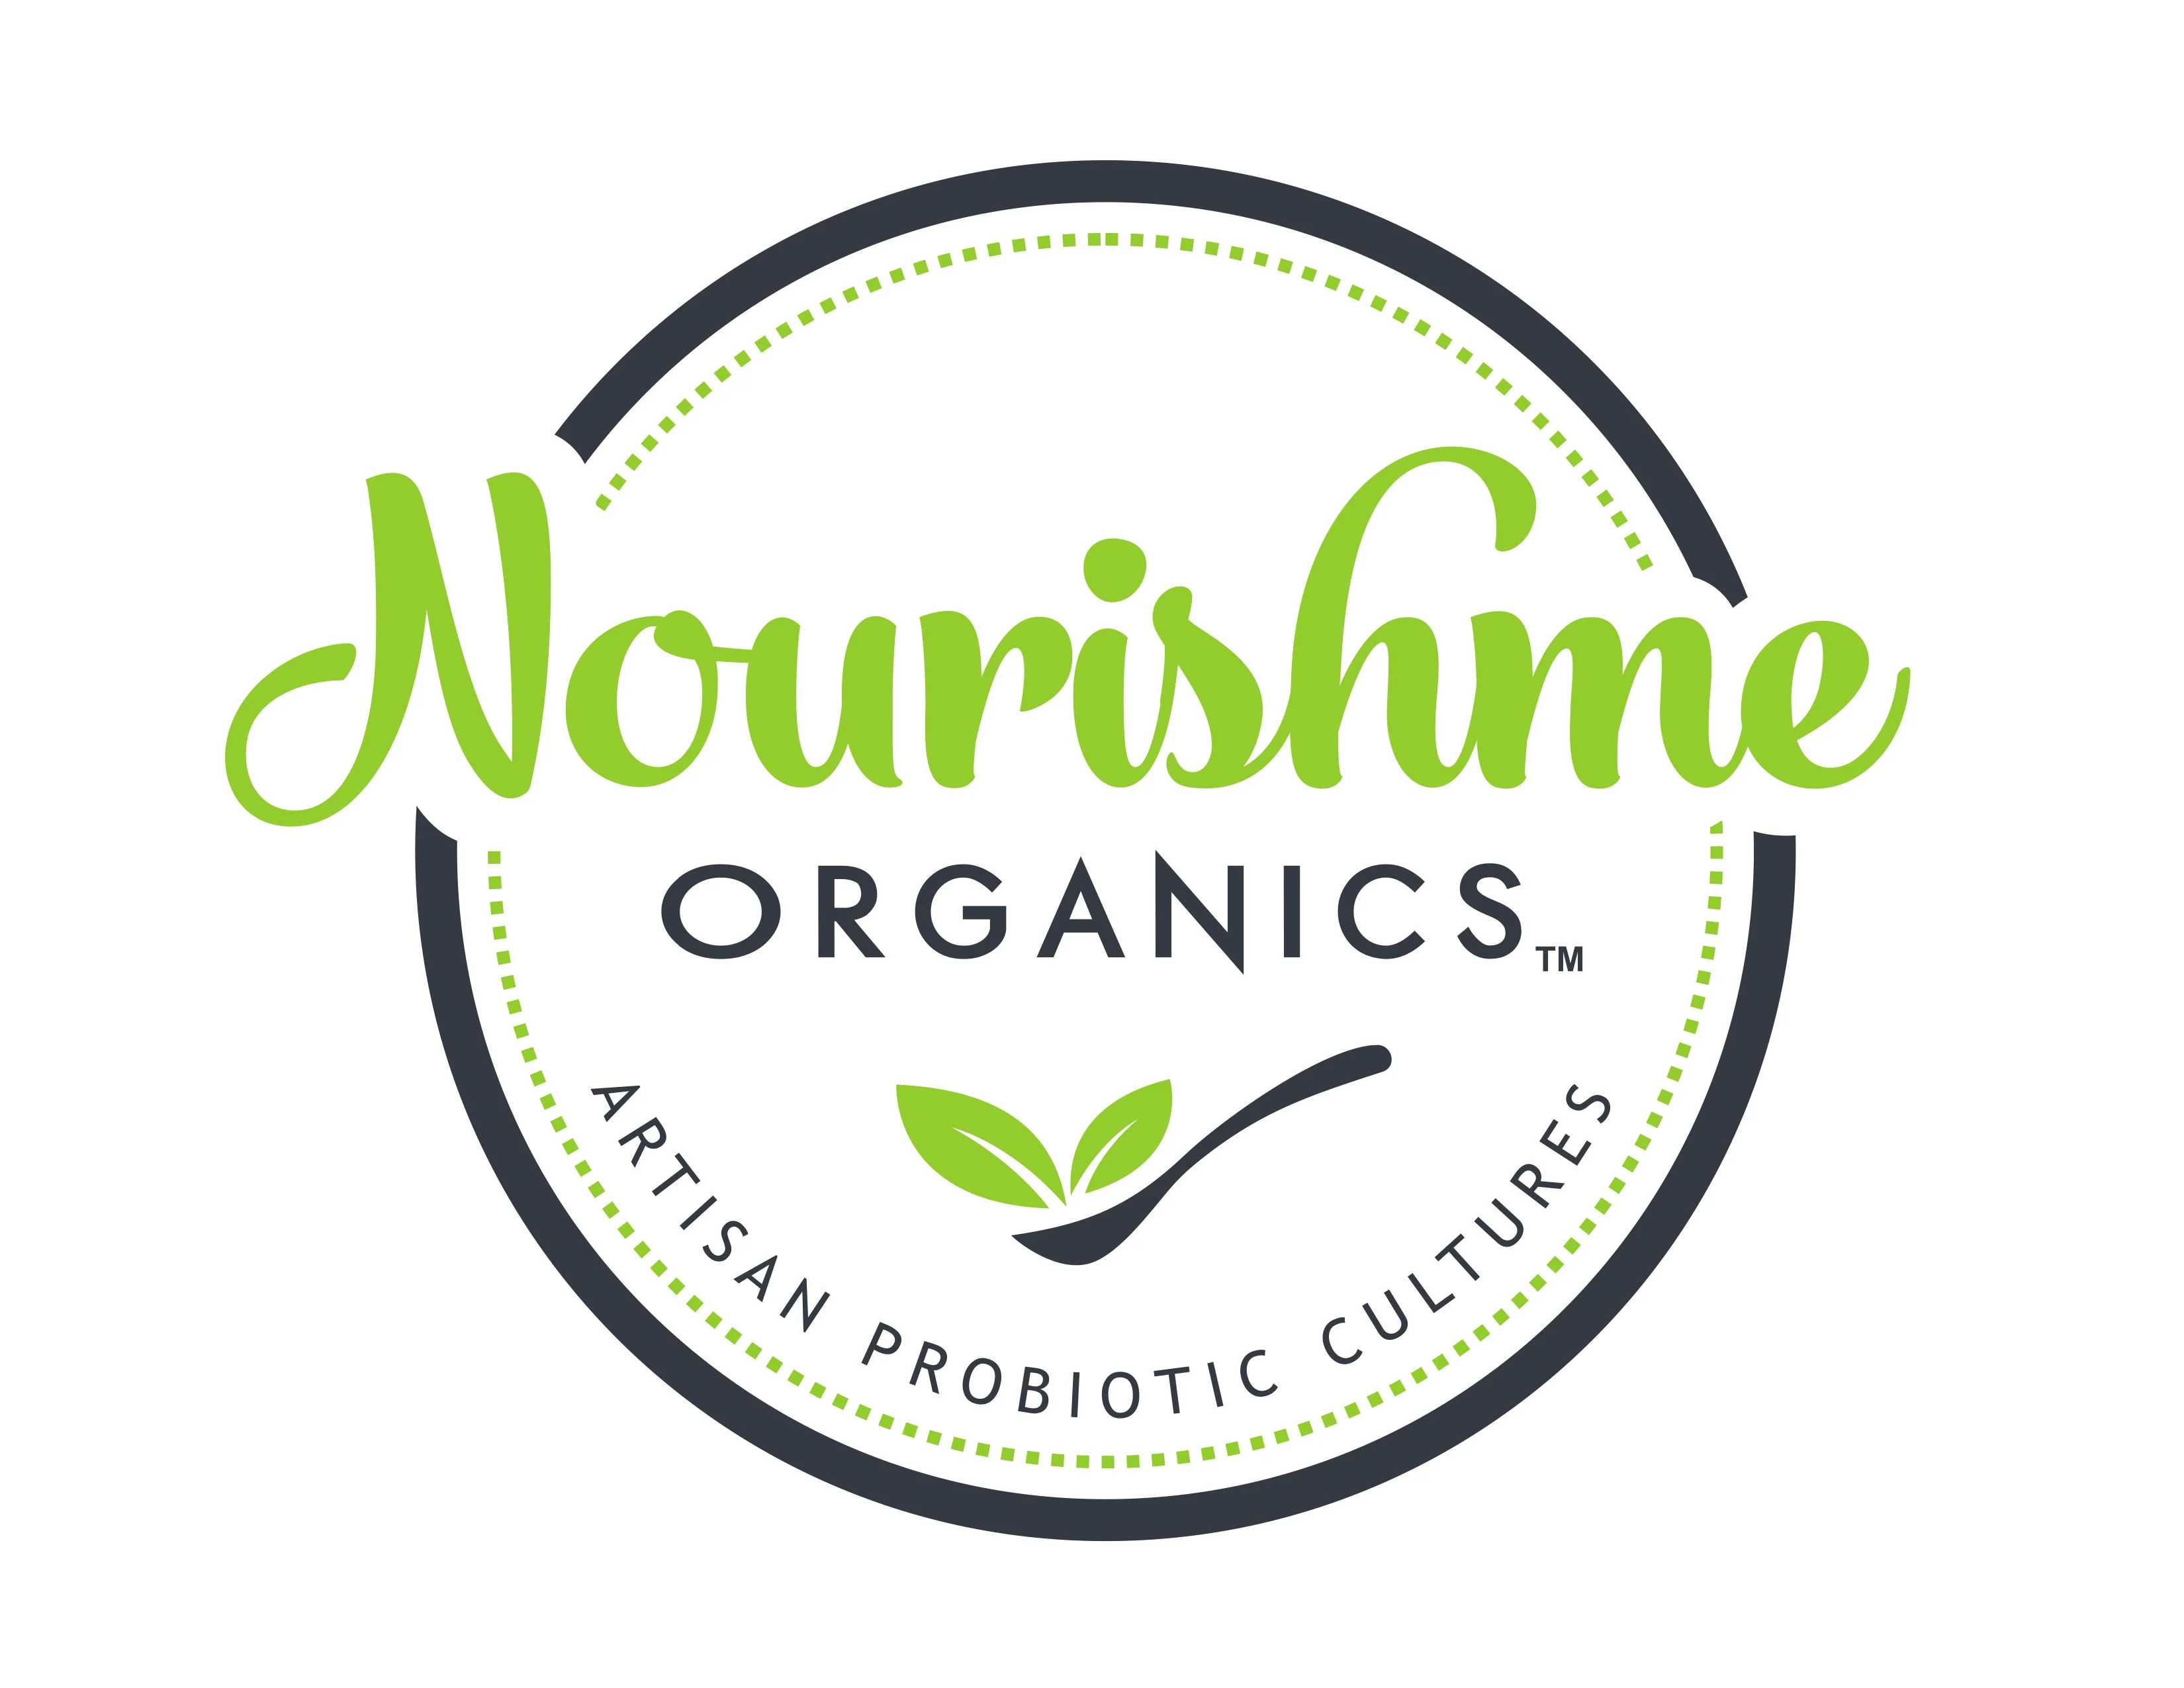 Nourishme Organics